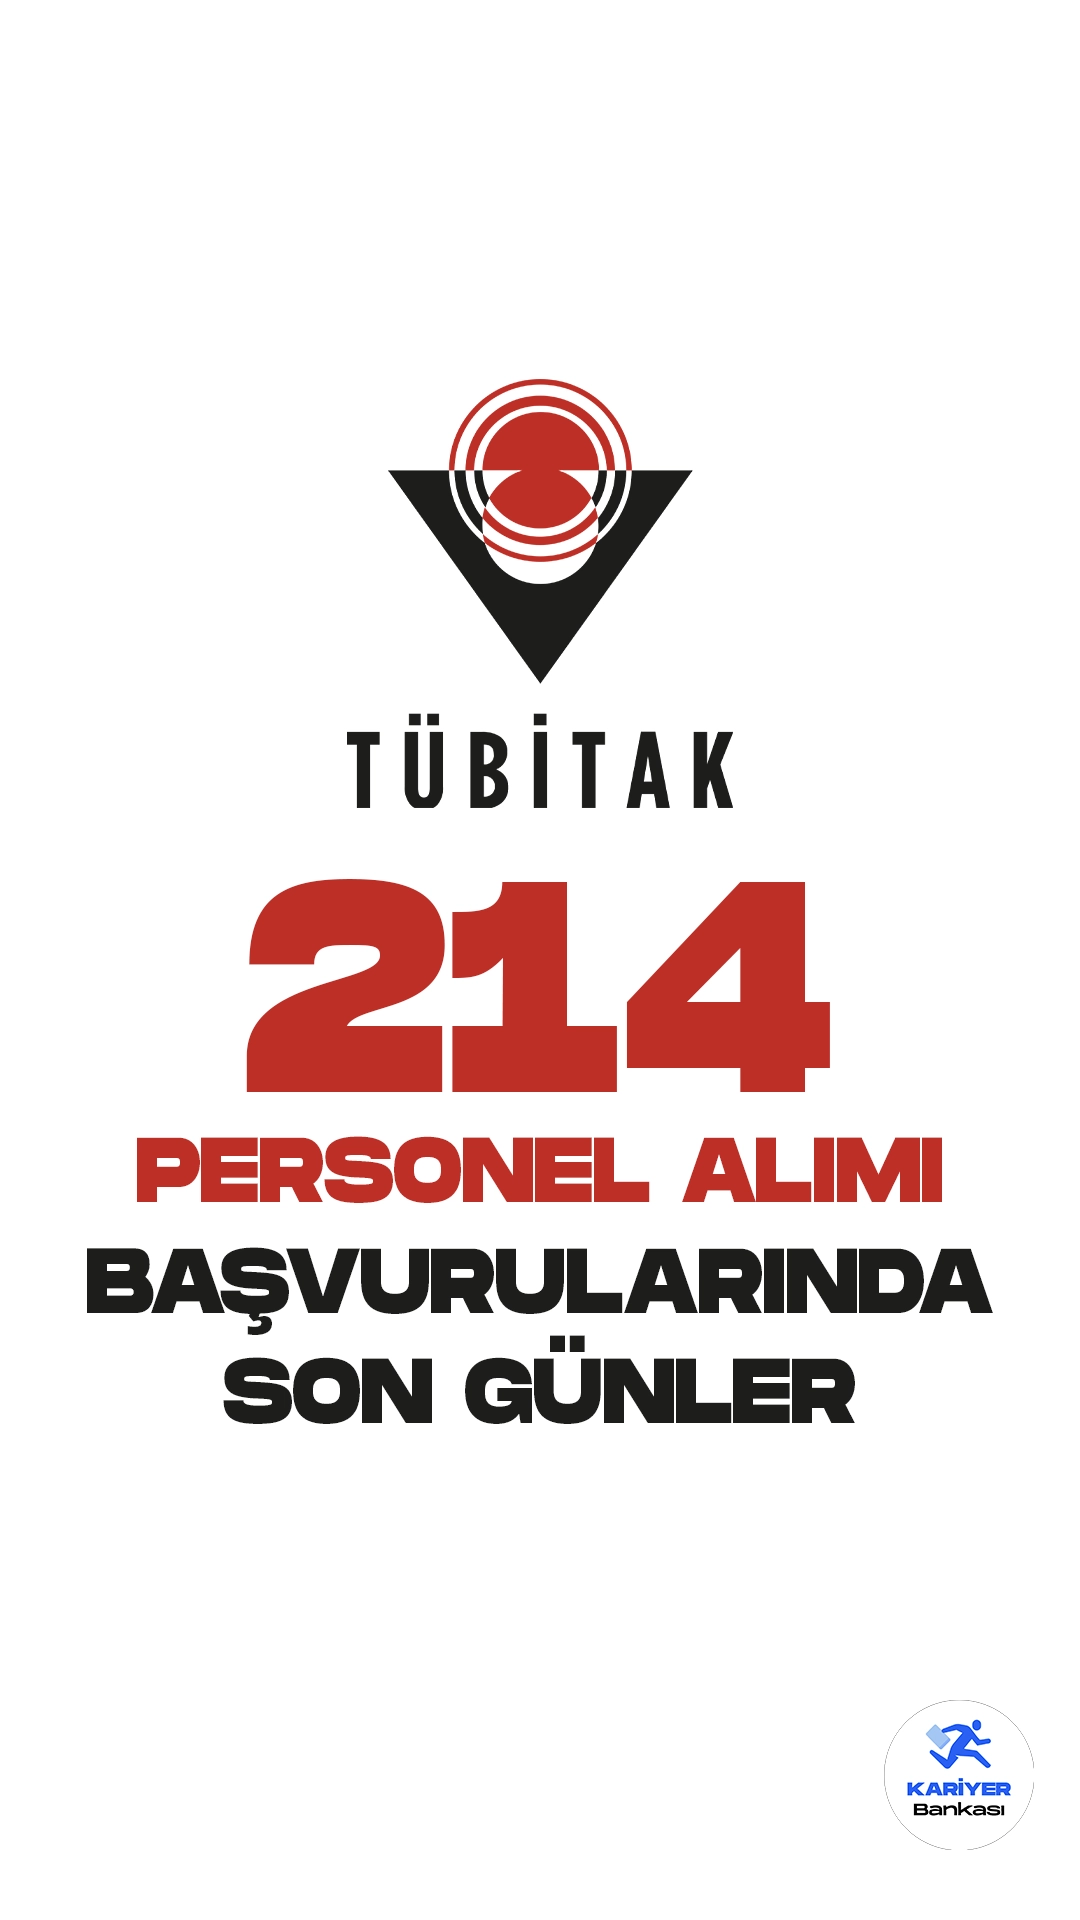 Türkiye Bilimsel ve Teknolojik Araştırma Kurumu (TÜBİTAK) personel alımı başvuruları 26 Temmuz'da sona eriyor. Resmi Gazete'de yayımlanan duyuruda, Ankara ve Gebze’de istihdam edilmek üzere, TÜBİTAK’a 214 kısmi süreli proje personeli alımı yapılacağı kaydedildi.